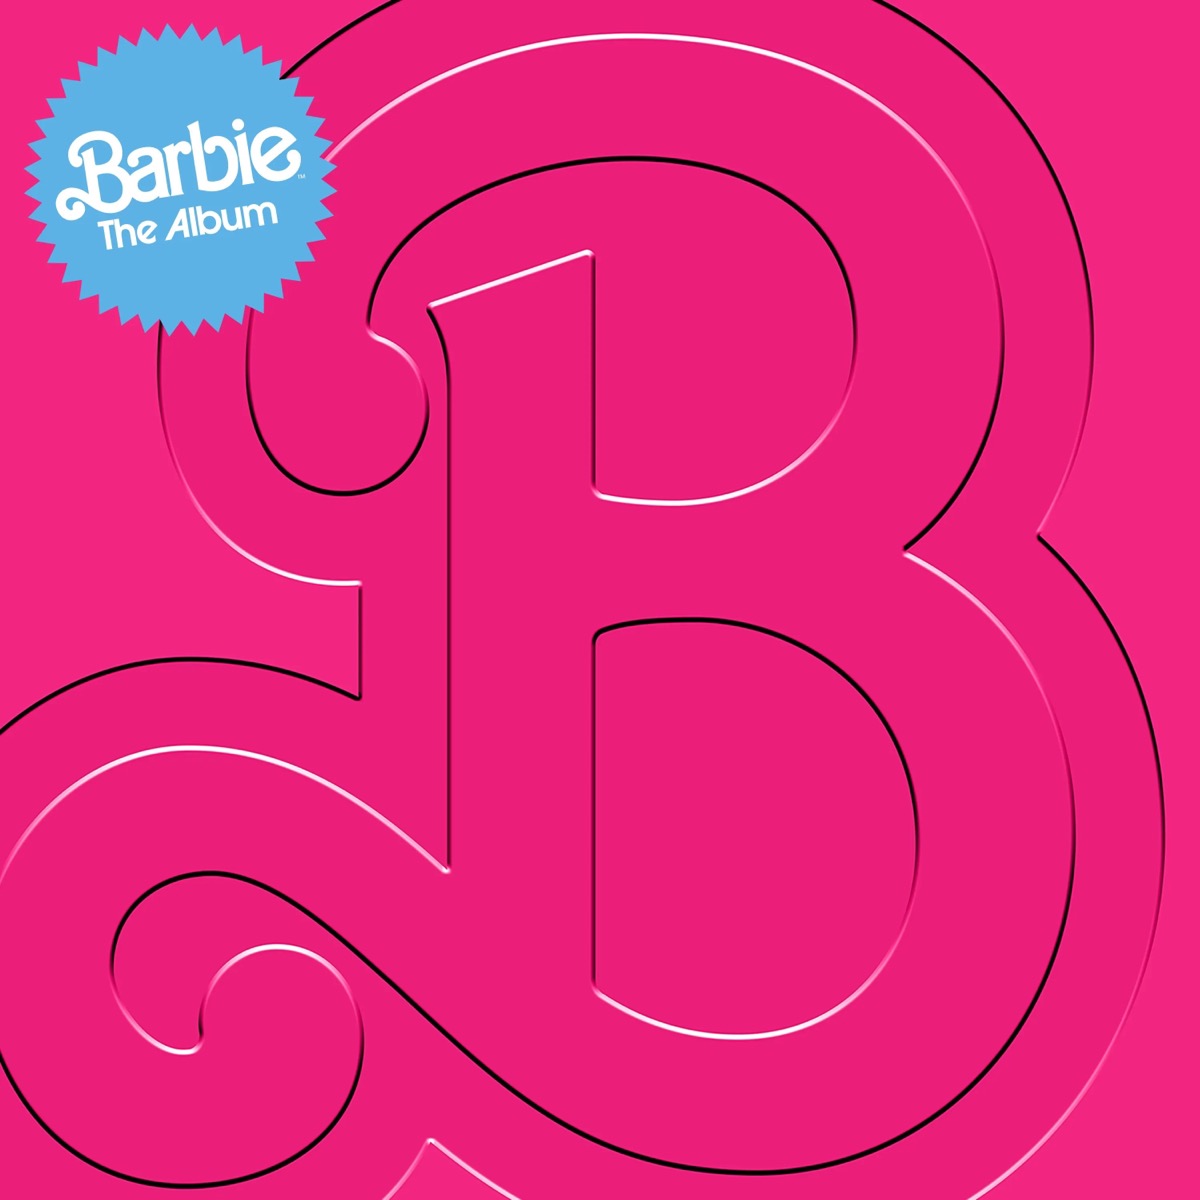 Barbie The Album cover